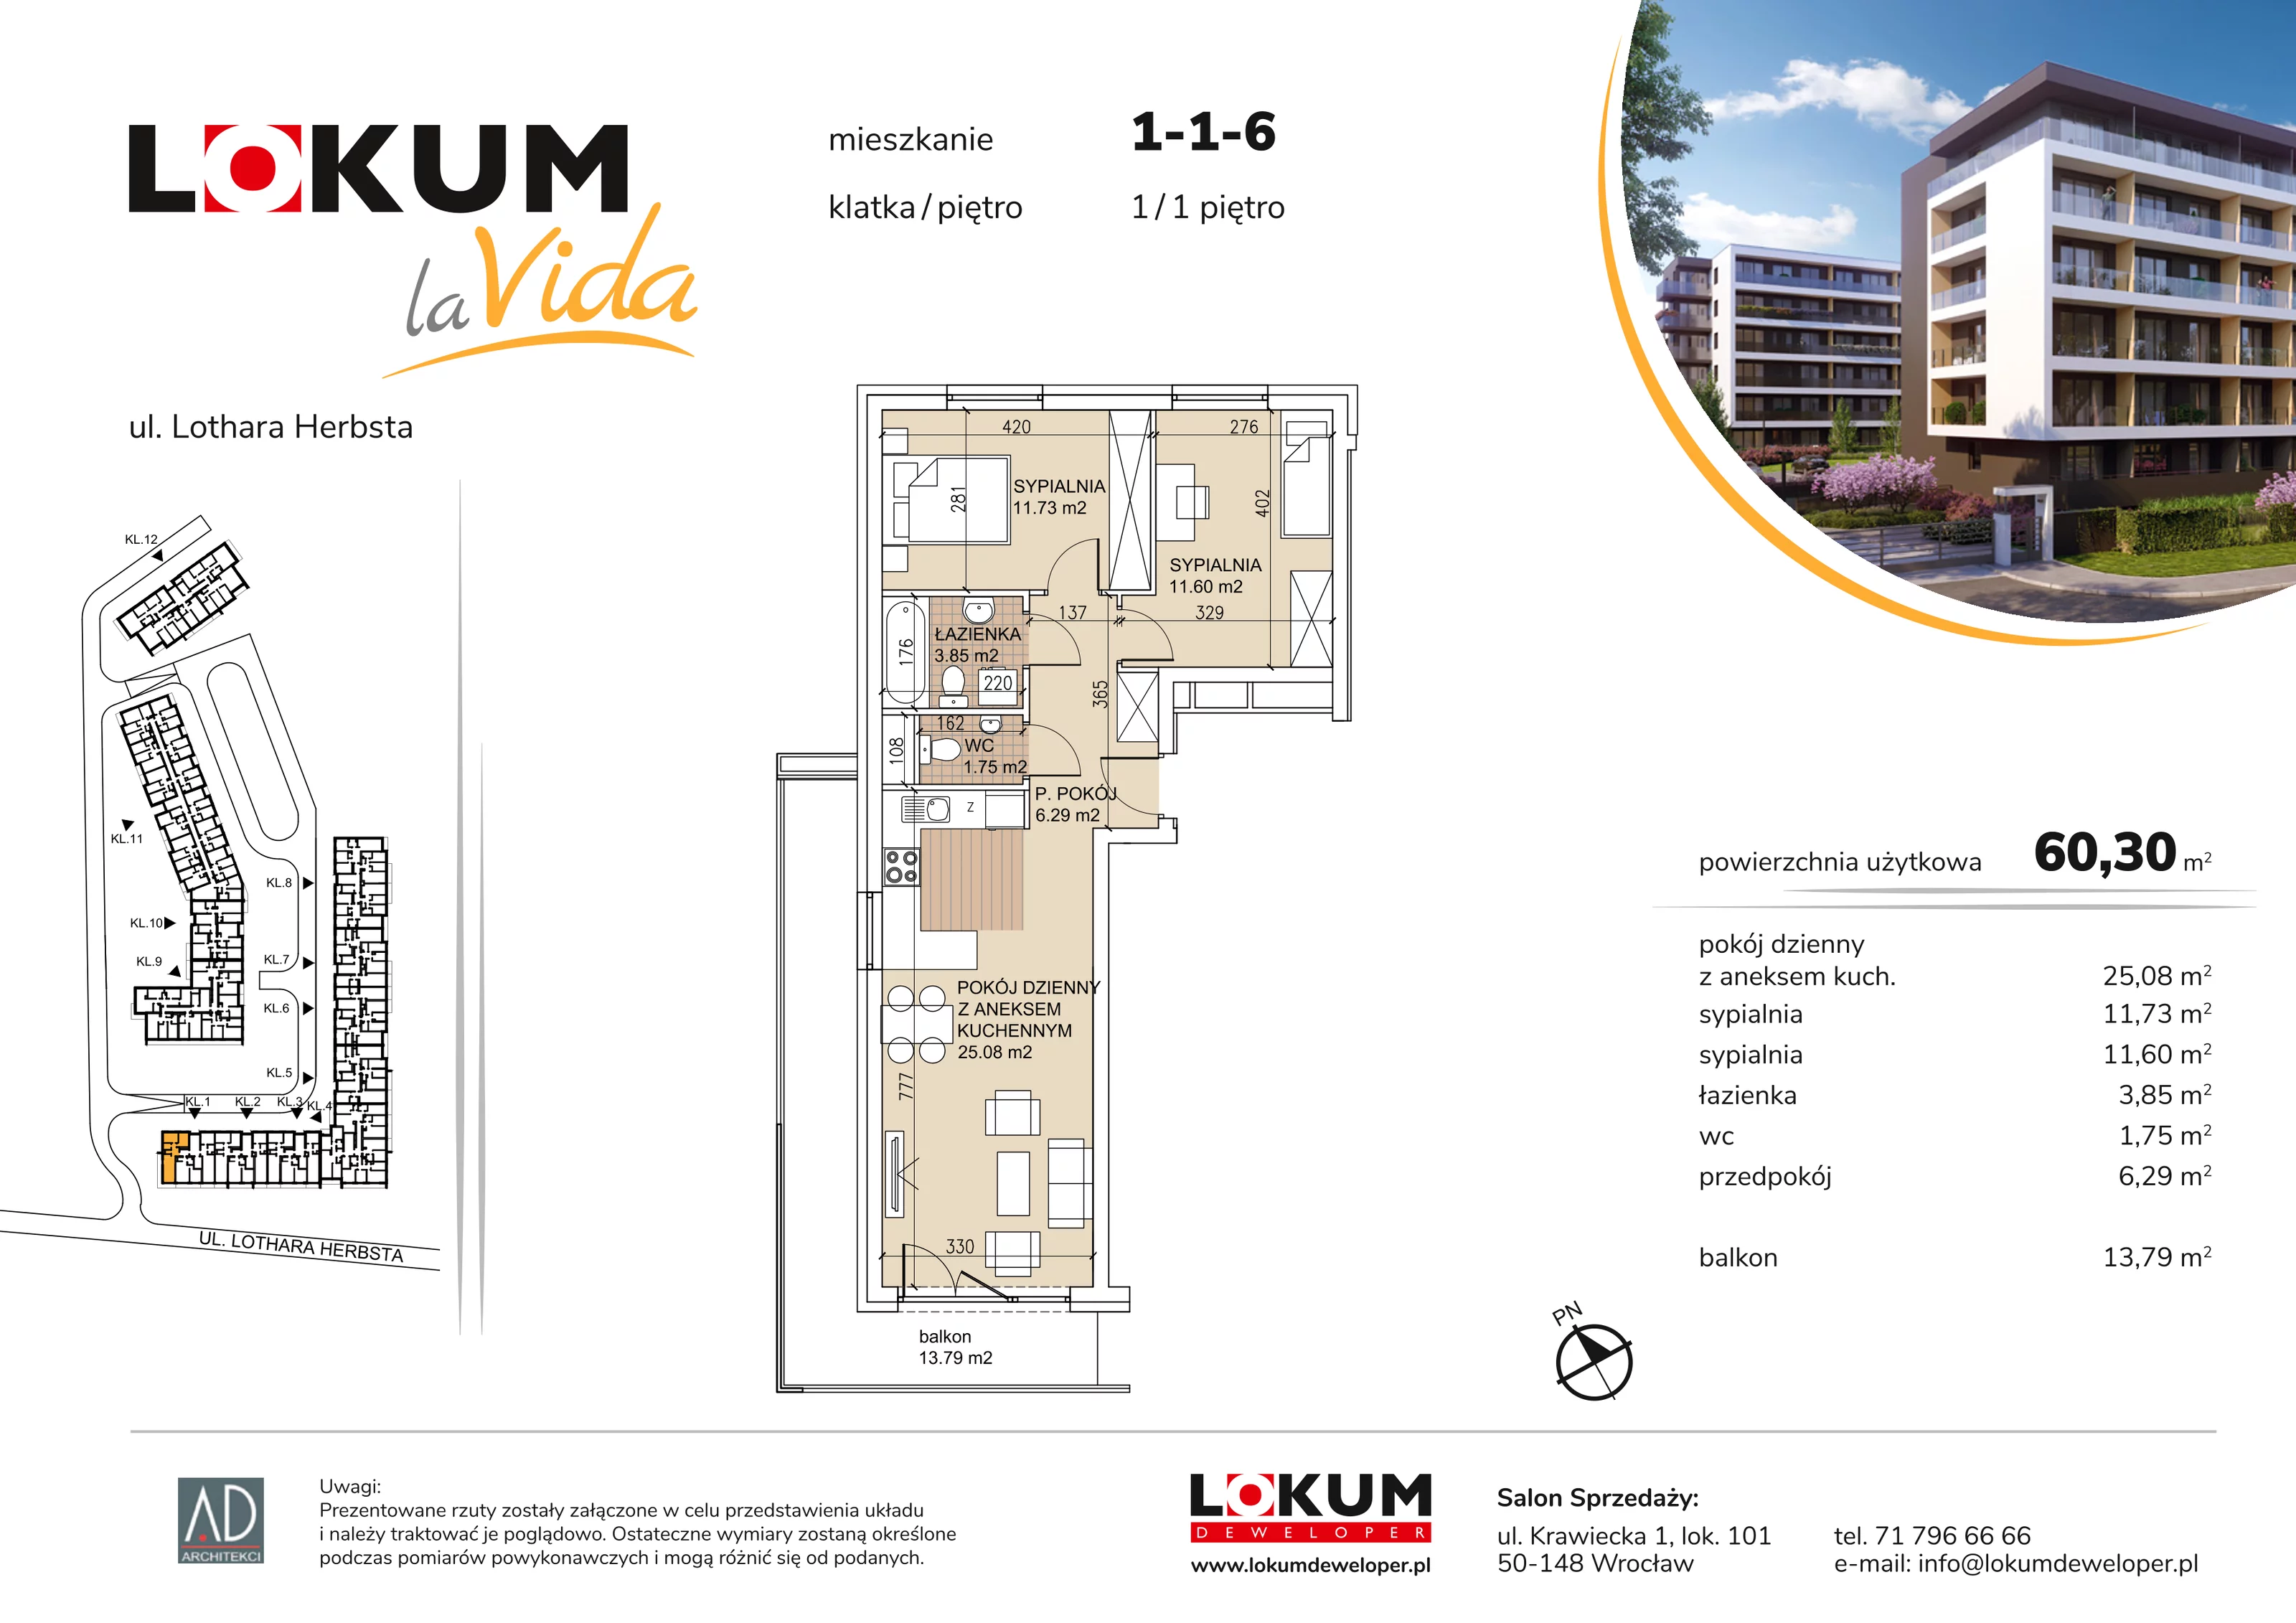 Mieszkanie 60,30 m², piętro 1, oferta nr 1-1-6, Lokum la Vida, Wrocław, Sołtysowice, ul. Lothara Herbsta